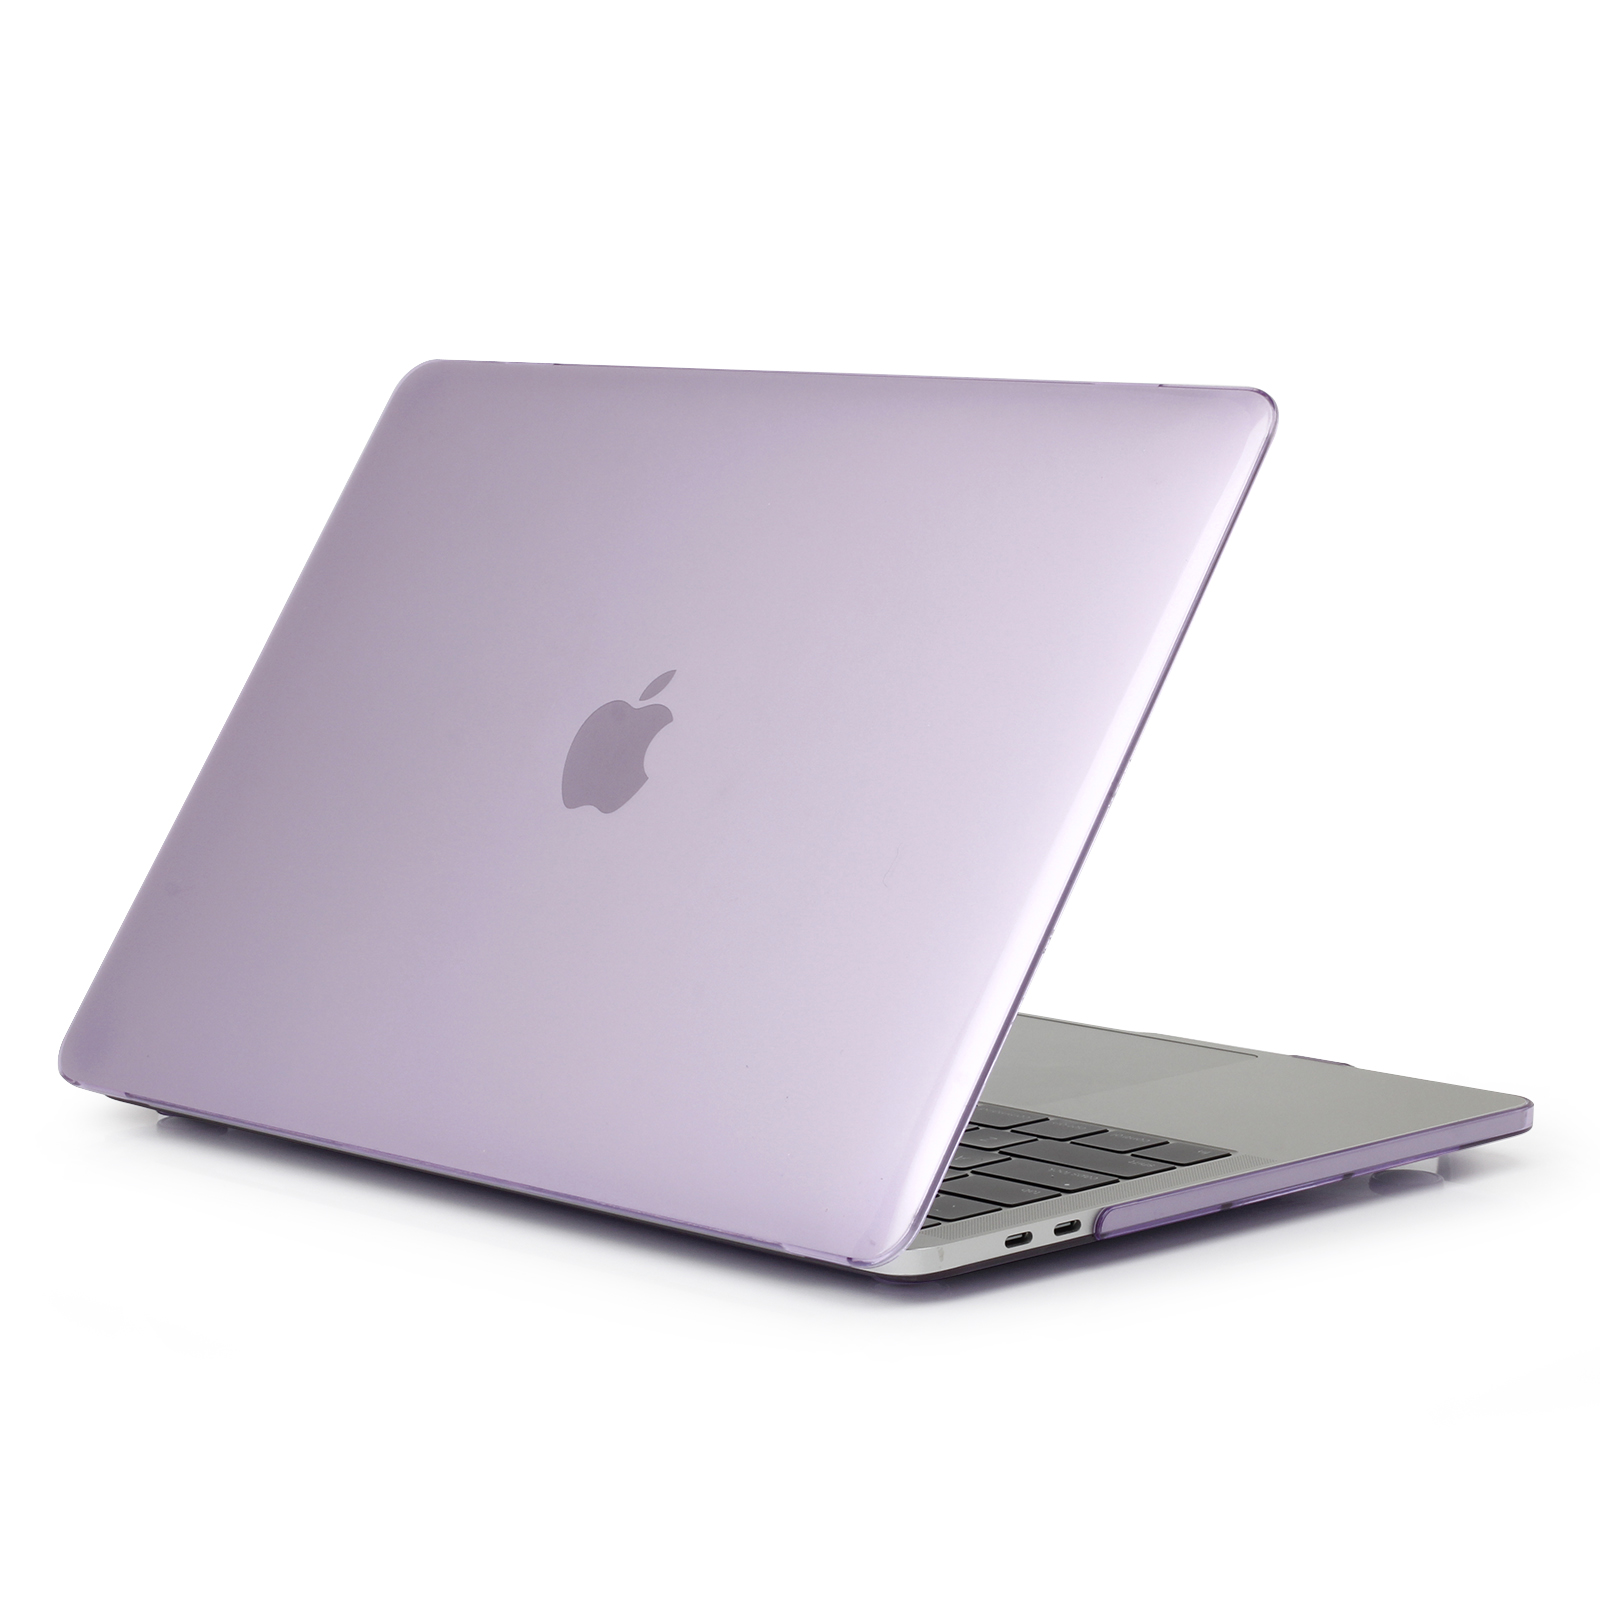 iPouzdro.cz pro MacBook Pro 15 (2012-2015) 2222221002078 fialová